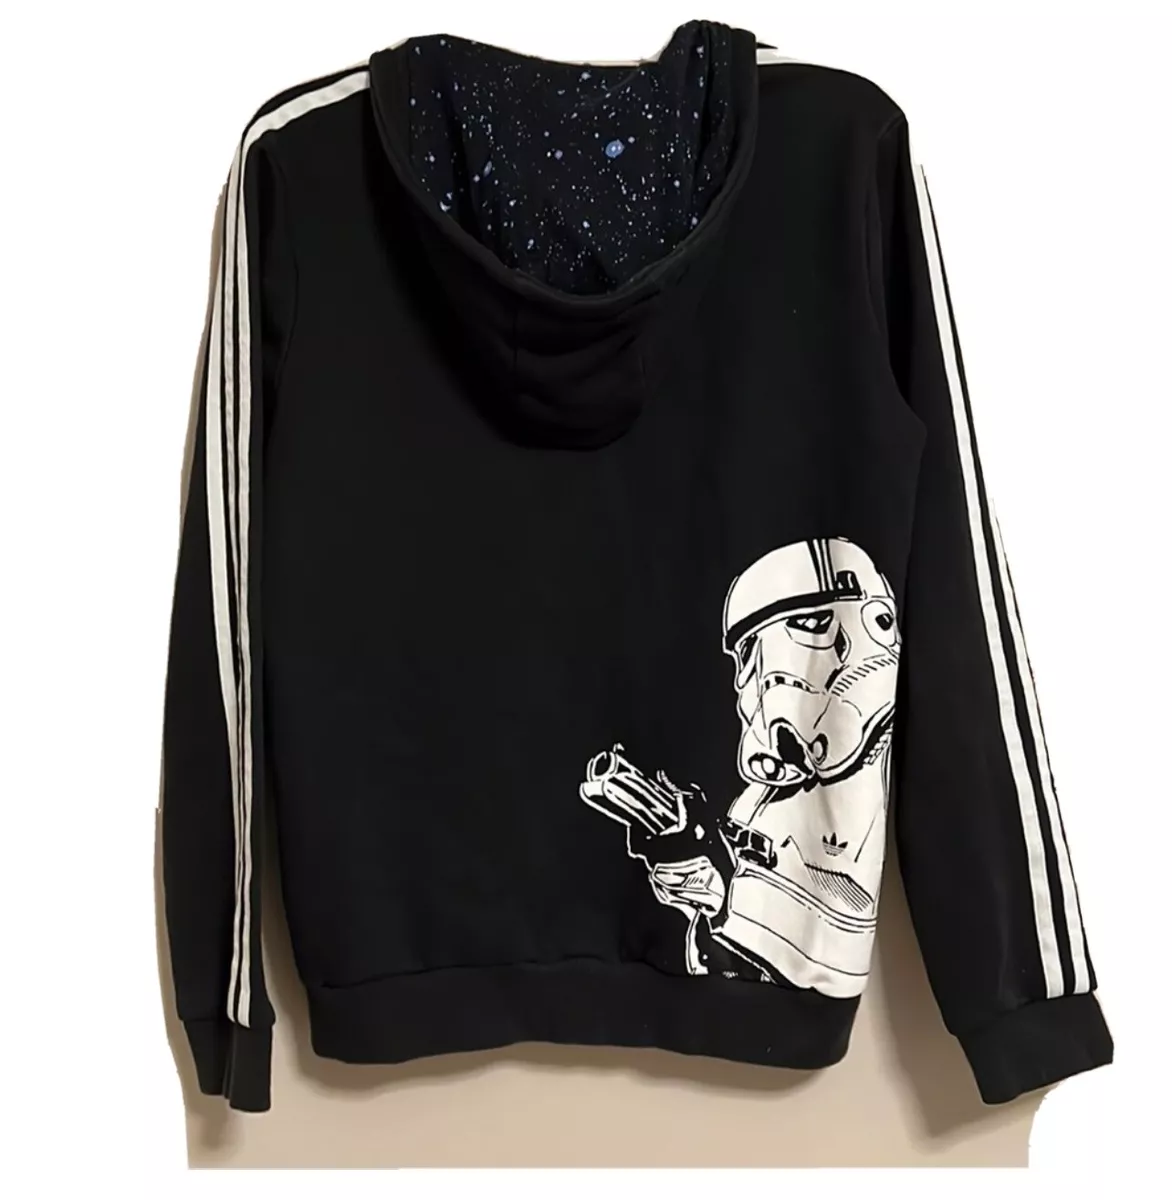 Adidas Wars Stormtrooper Hoodie Jacket Youth Large 13/14 Black | eBay